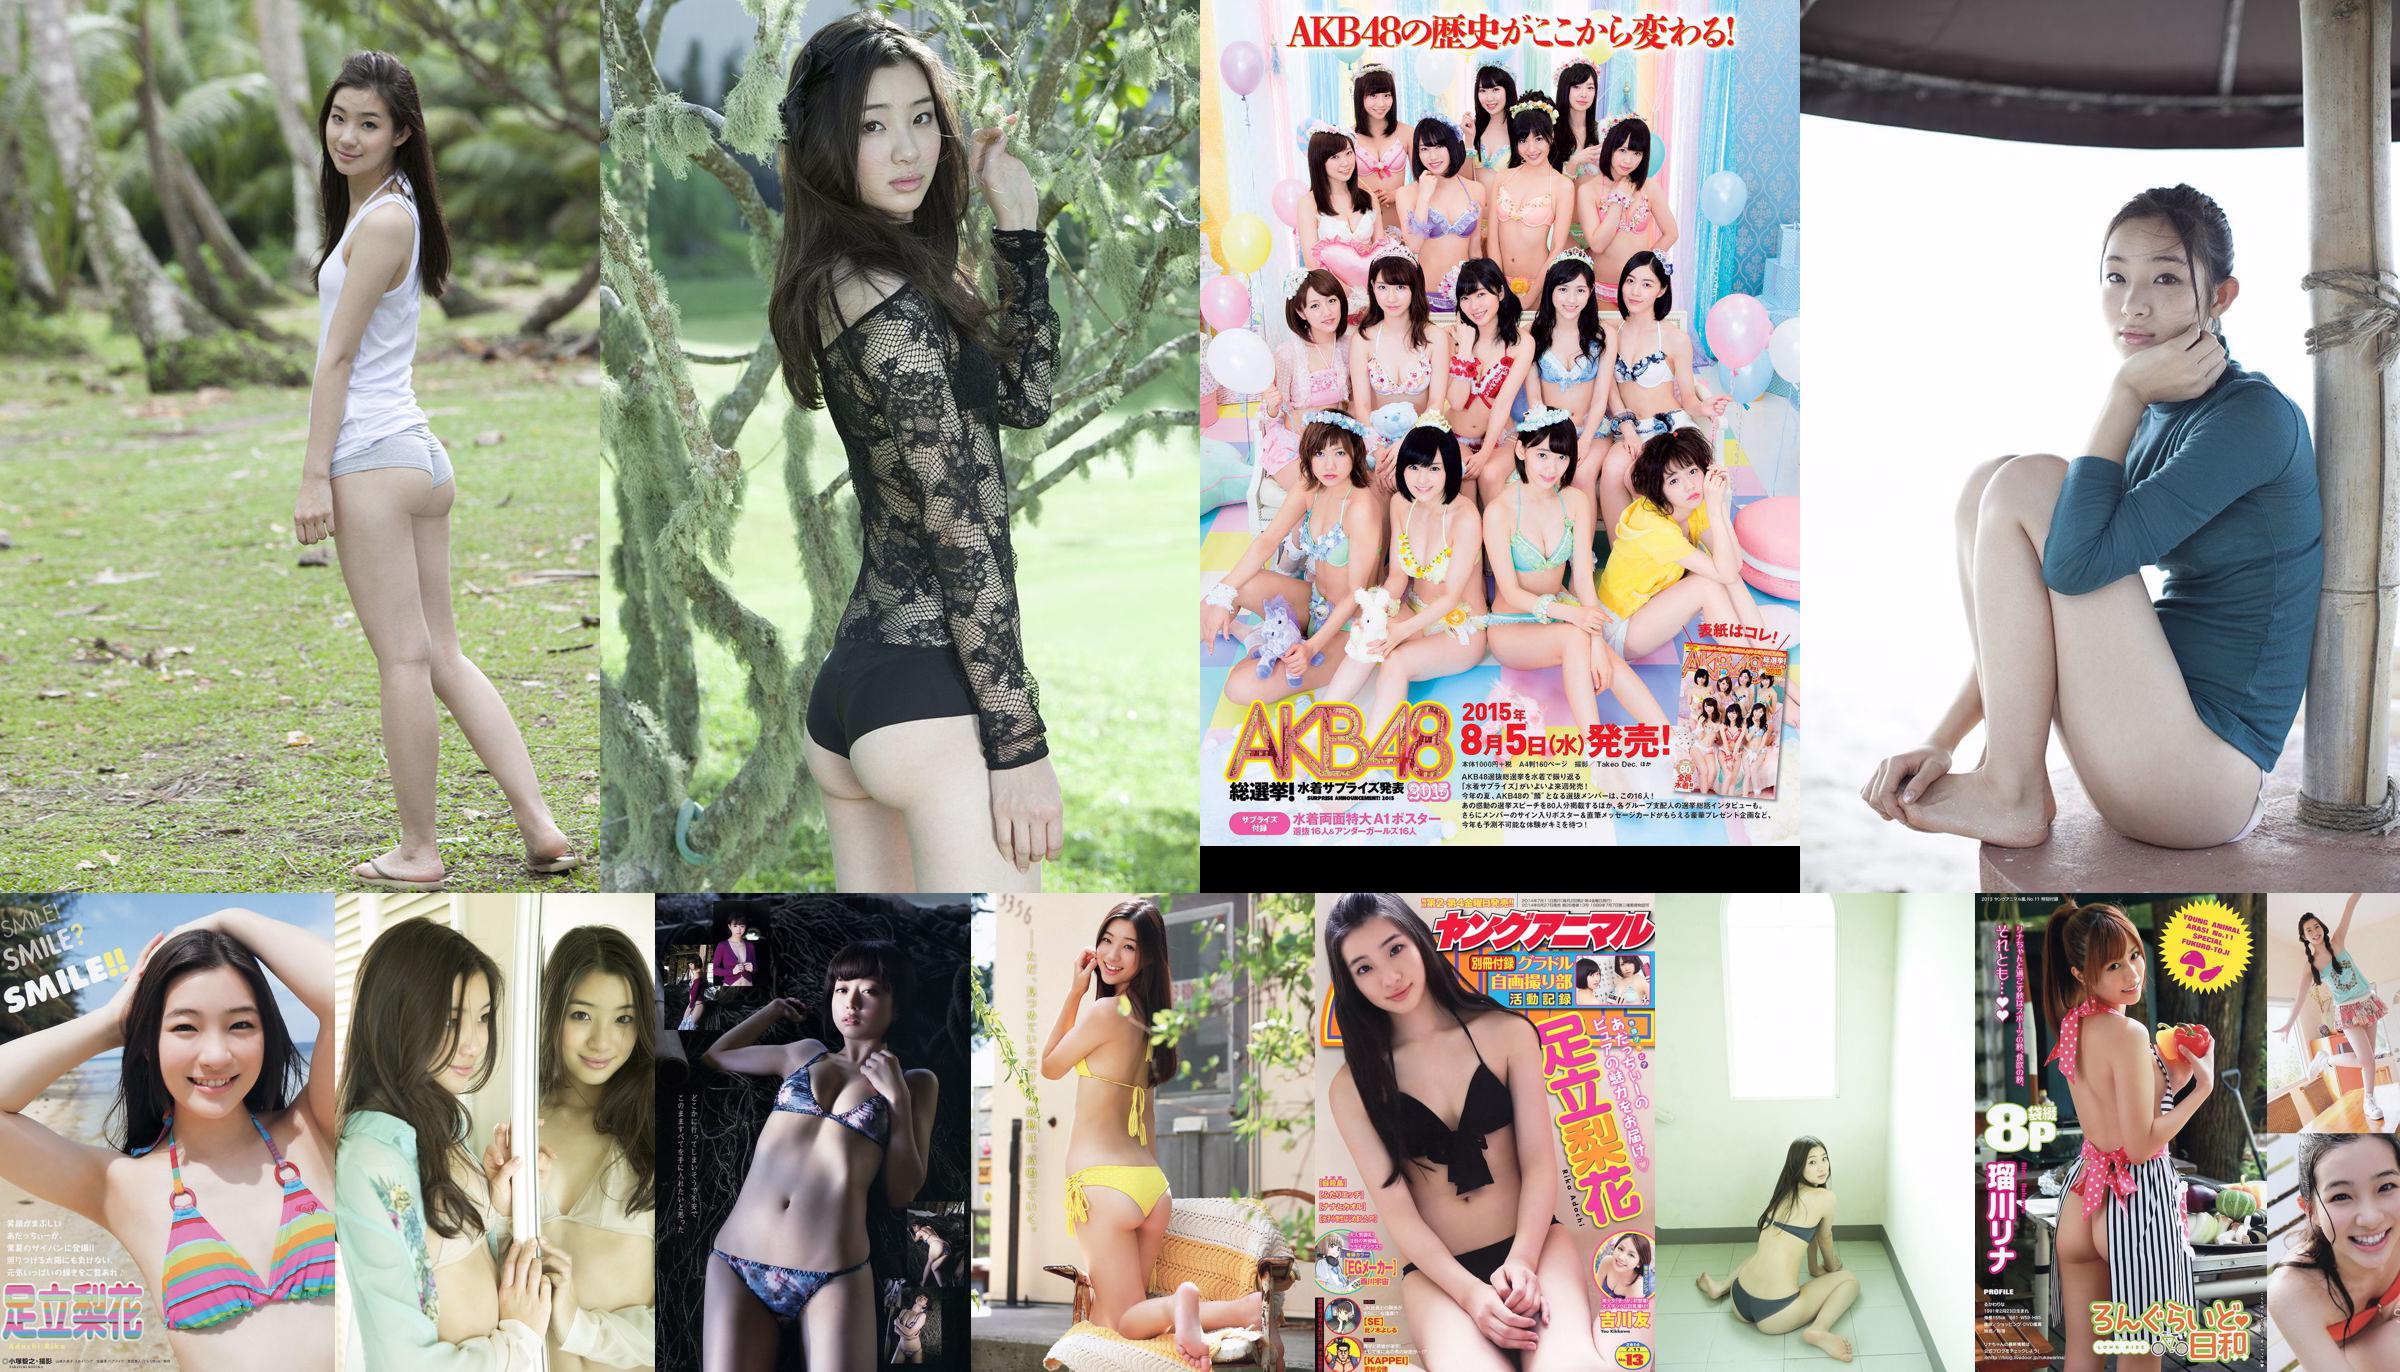 Rika Adachi Yuko Shimizu Nozomi Tachibana Asuka Kishi Rio Uchida [Playboy hebdomadaire] 2015 No.32 Photo Toshi No.4a8a17 Page 3